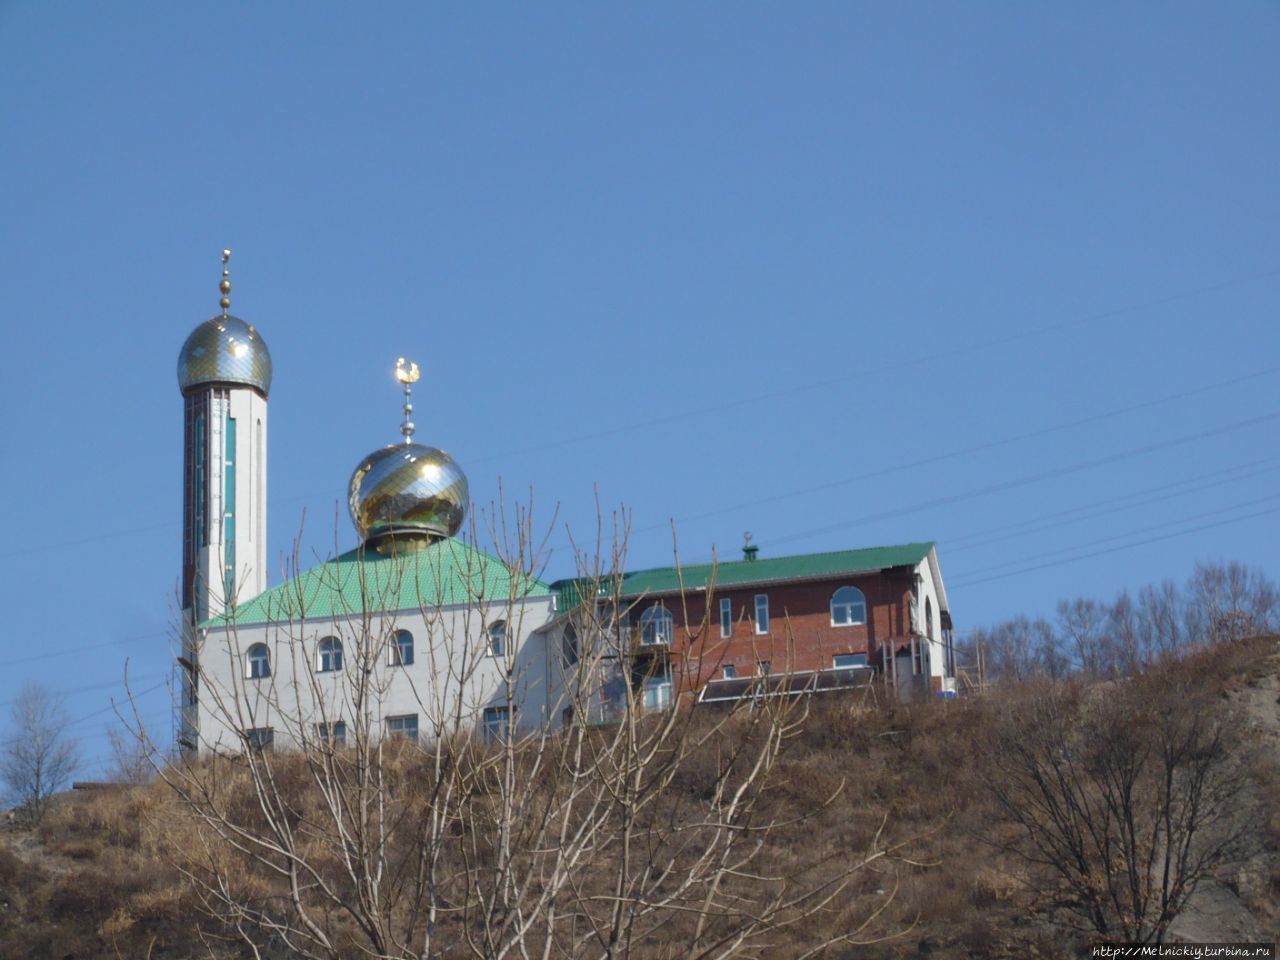 Находкинская мечеть / Nakhodka mosque